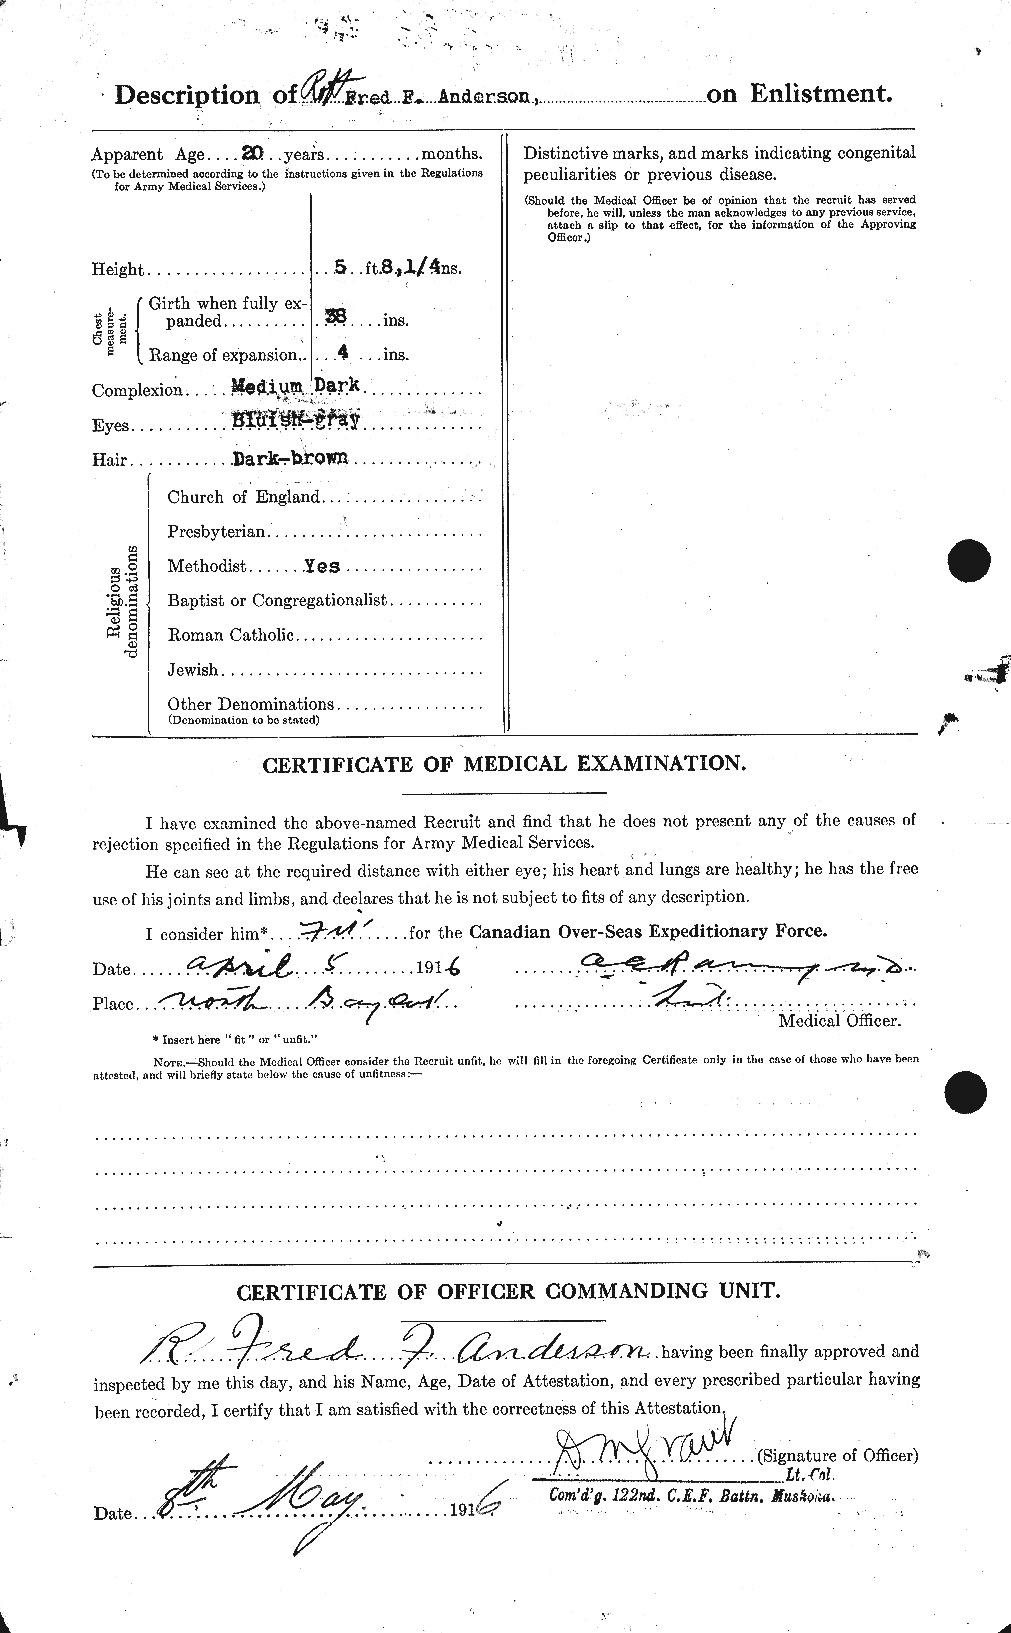 Dossiers du Personnel de la Première Guerre mondiale - CEC 207257b